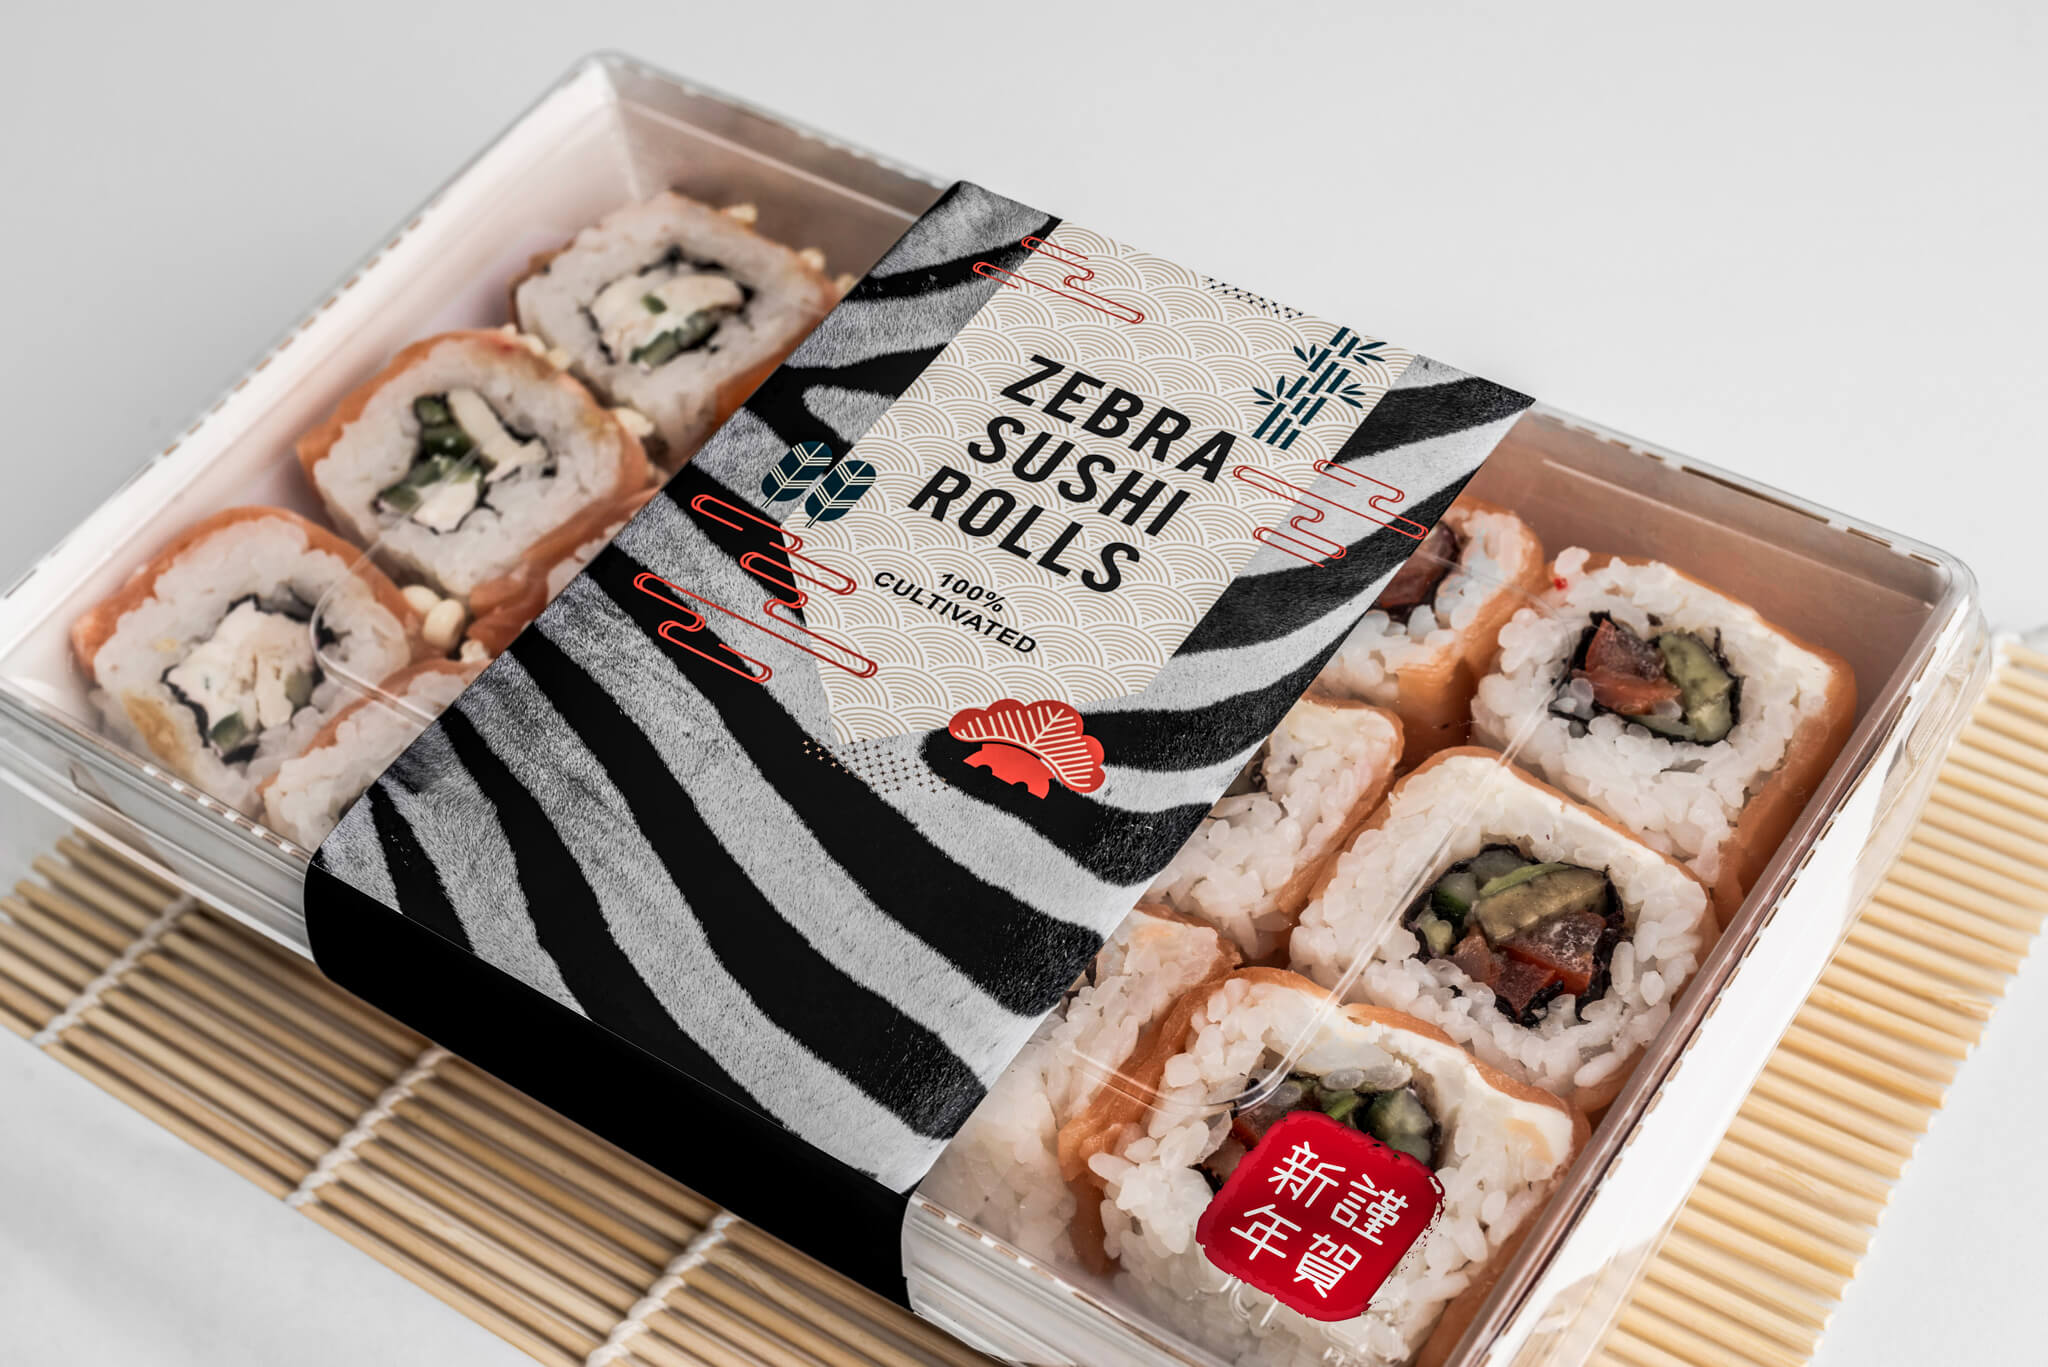 Sushi from In vitro Zebra meat 